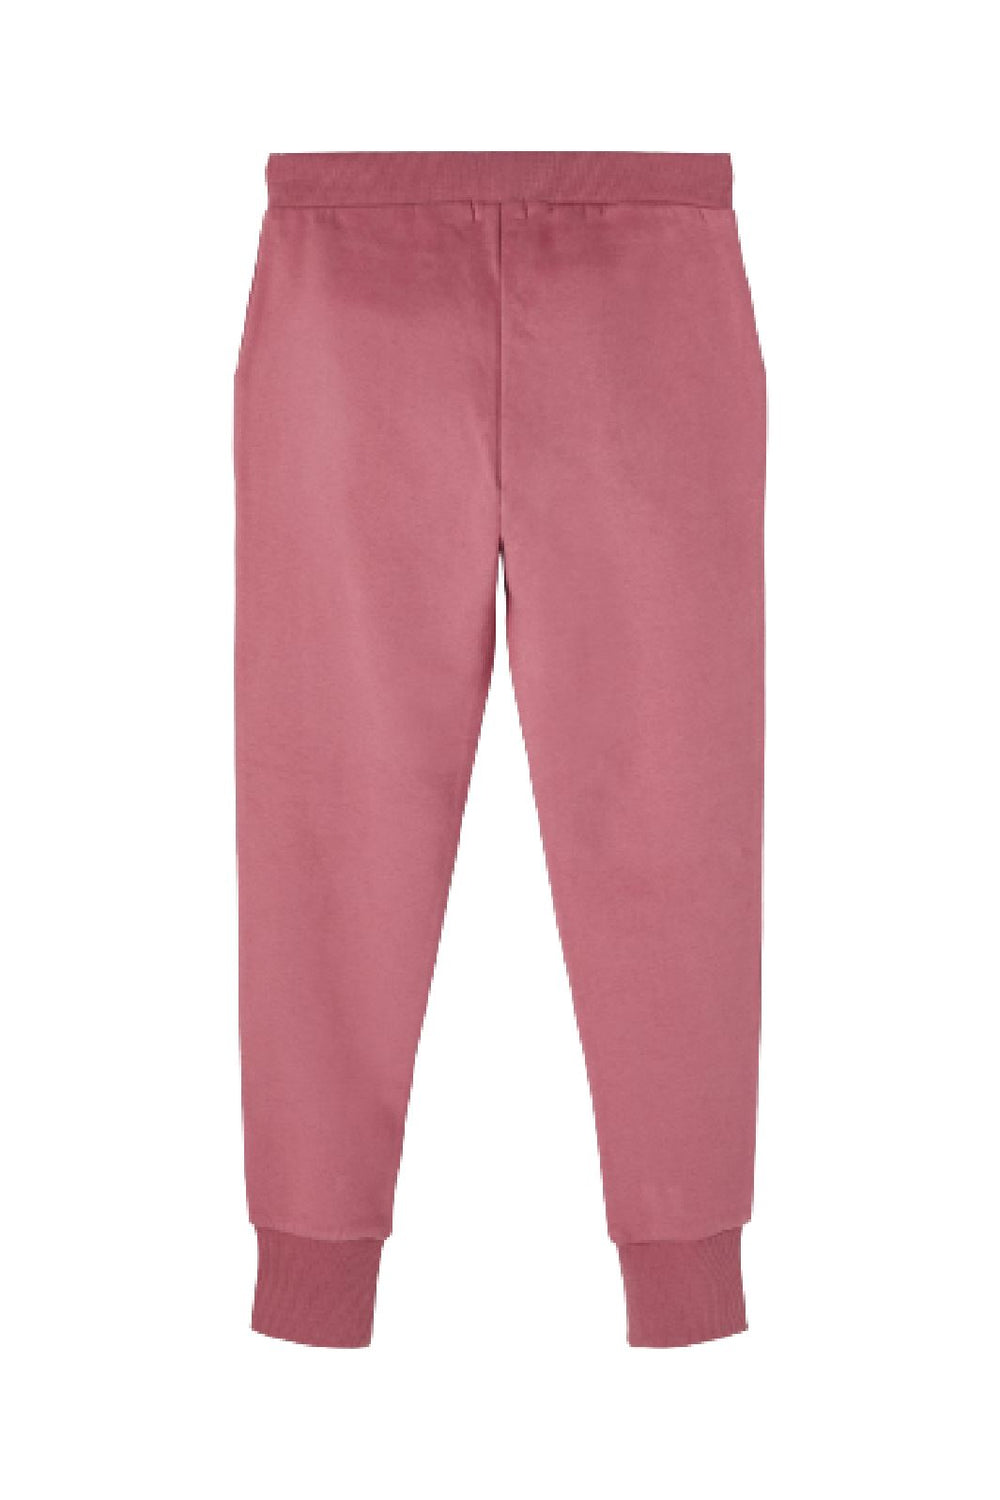 Name It - NKFLENA SWEAT PANT BRU - Deco Rose Sweatpants 